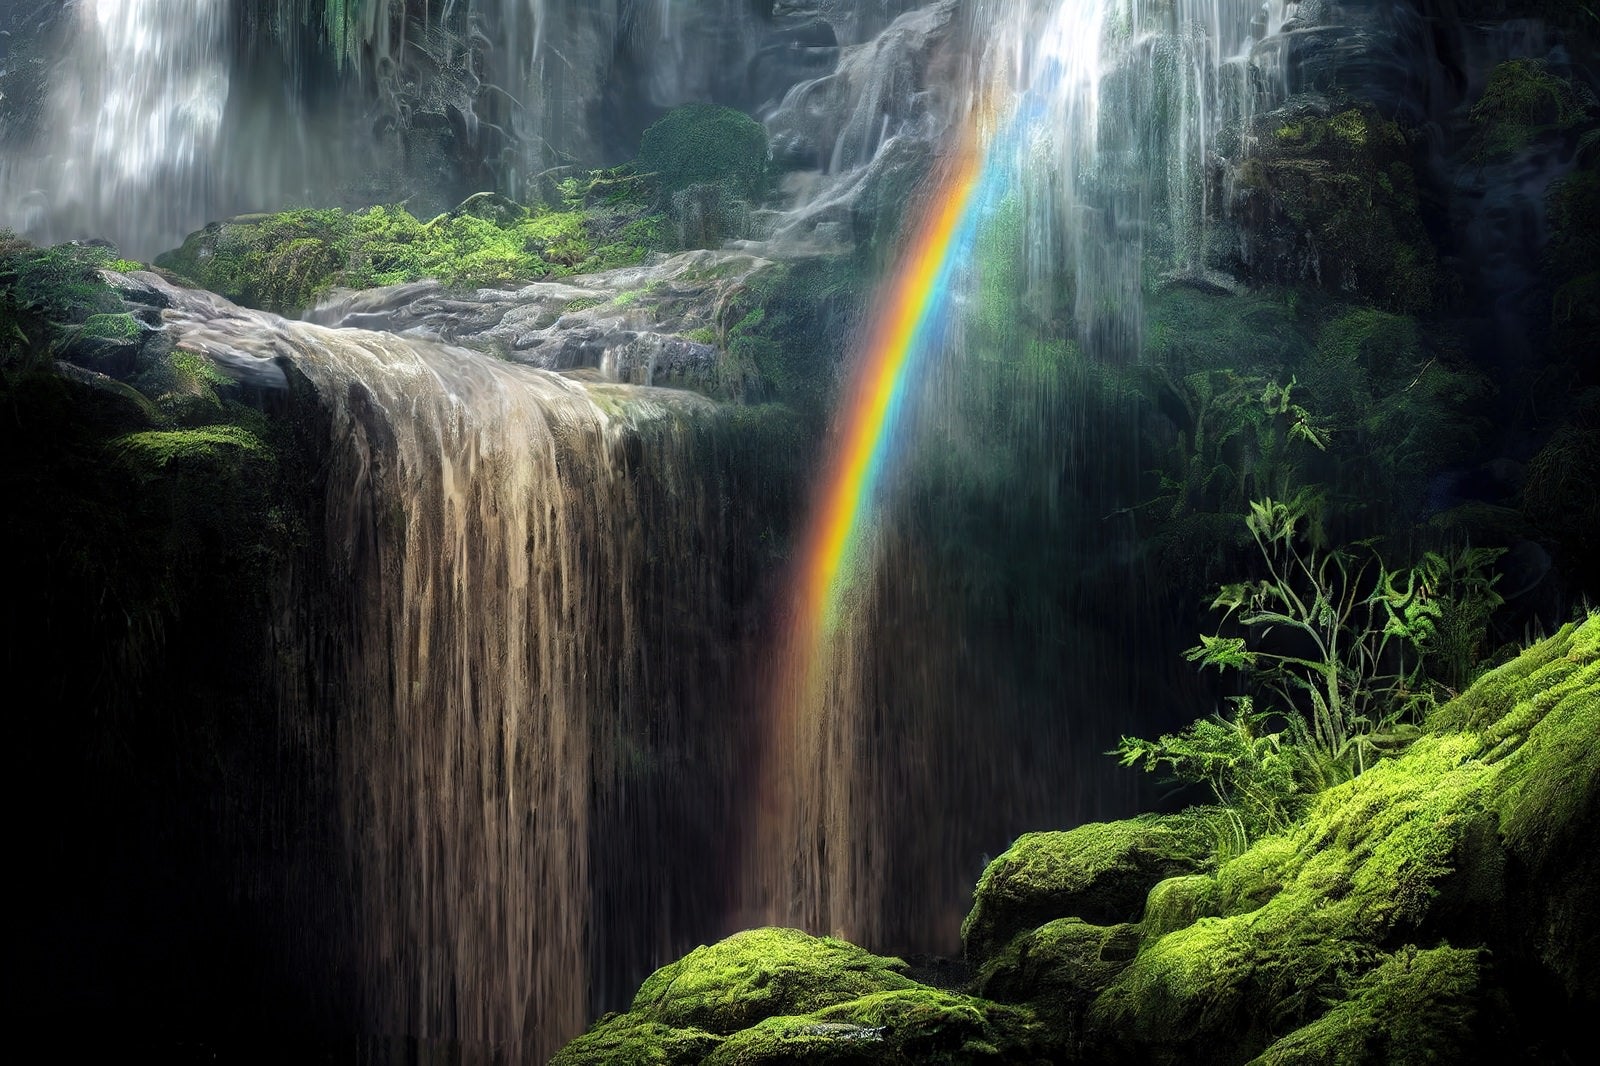 「流れ落ちる滝とレインボー」の写真